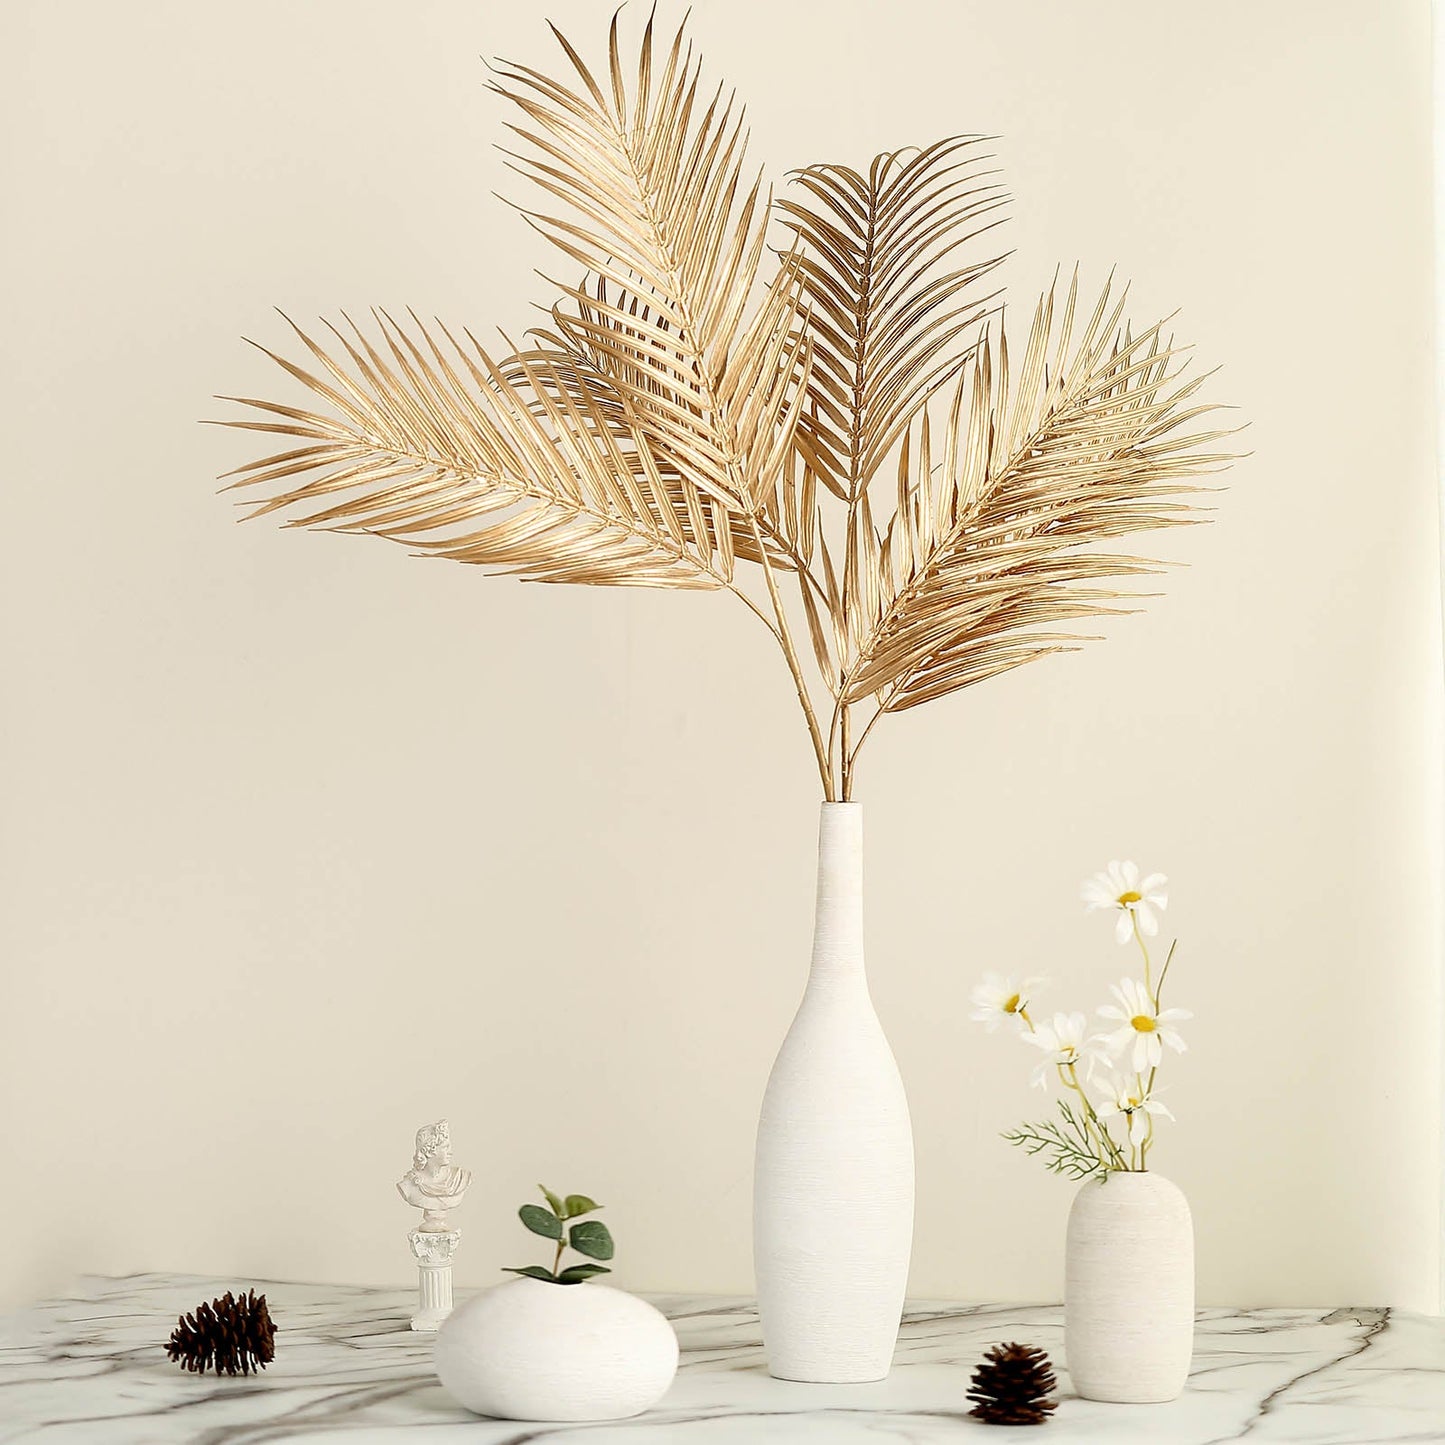 2 Stems Metallic Gold Artificial Palm Leaf Branch Vase Filler 32"